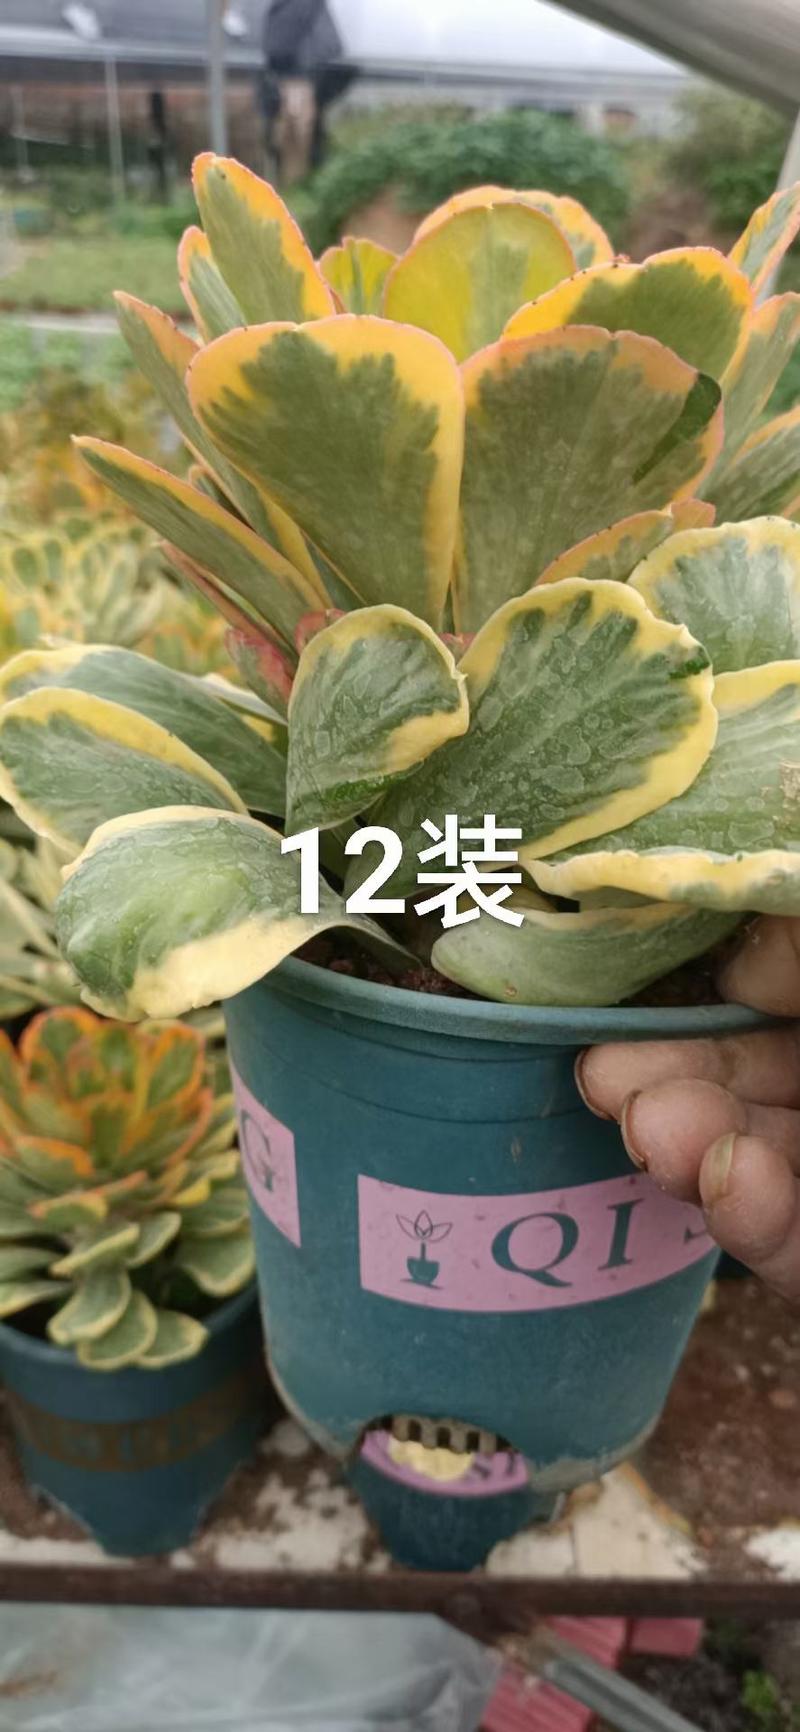 扇贝麒麟锦，特色植物。有12装15装一颗装，一件也是批发